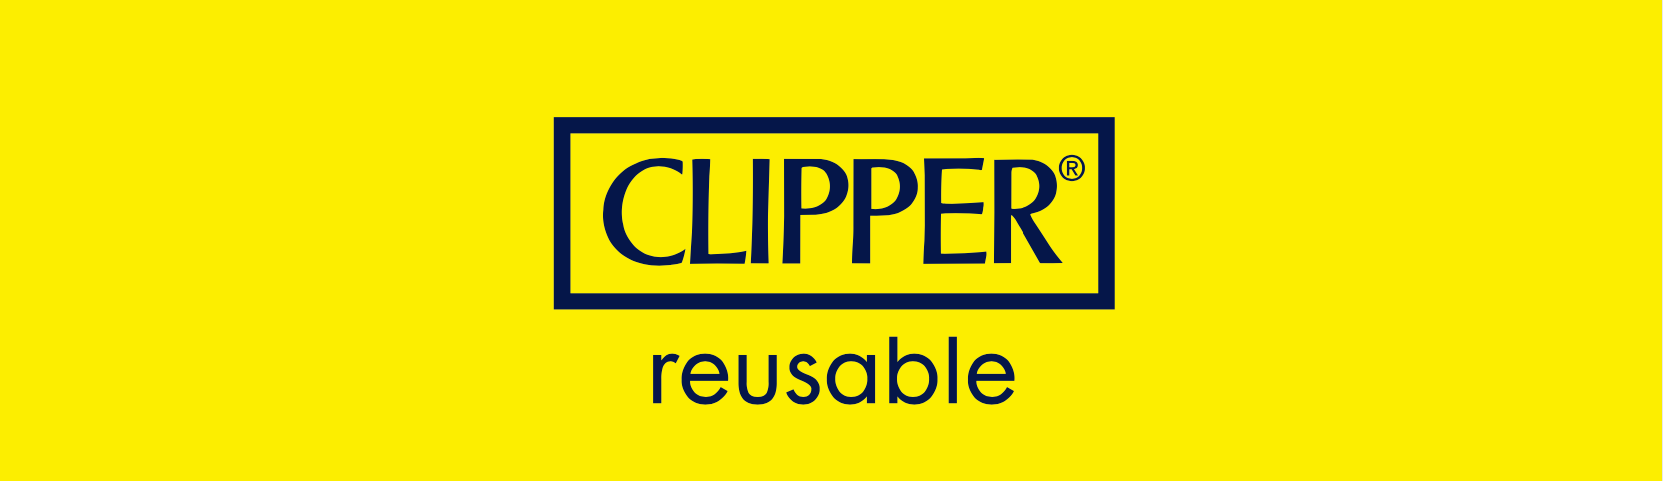 clipper-briquet